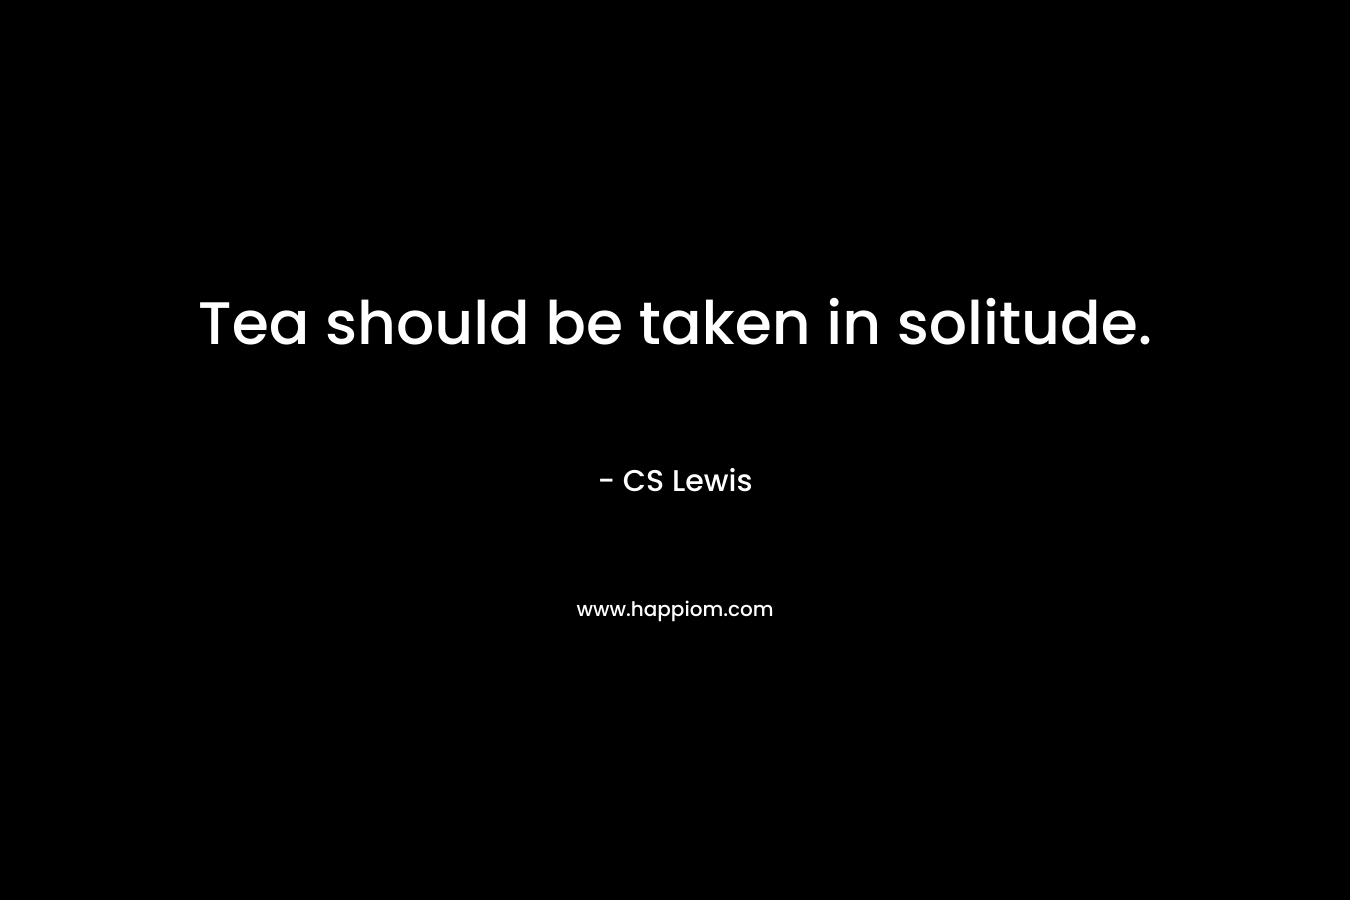 Tea should be taken in solitude.